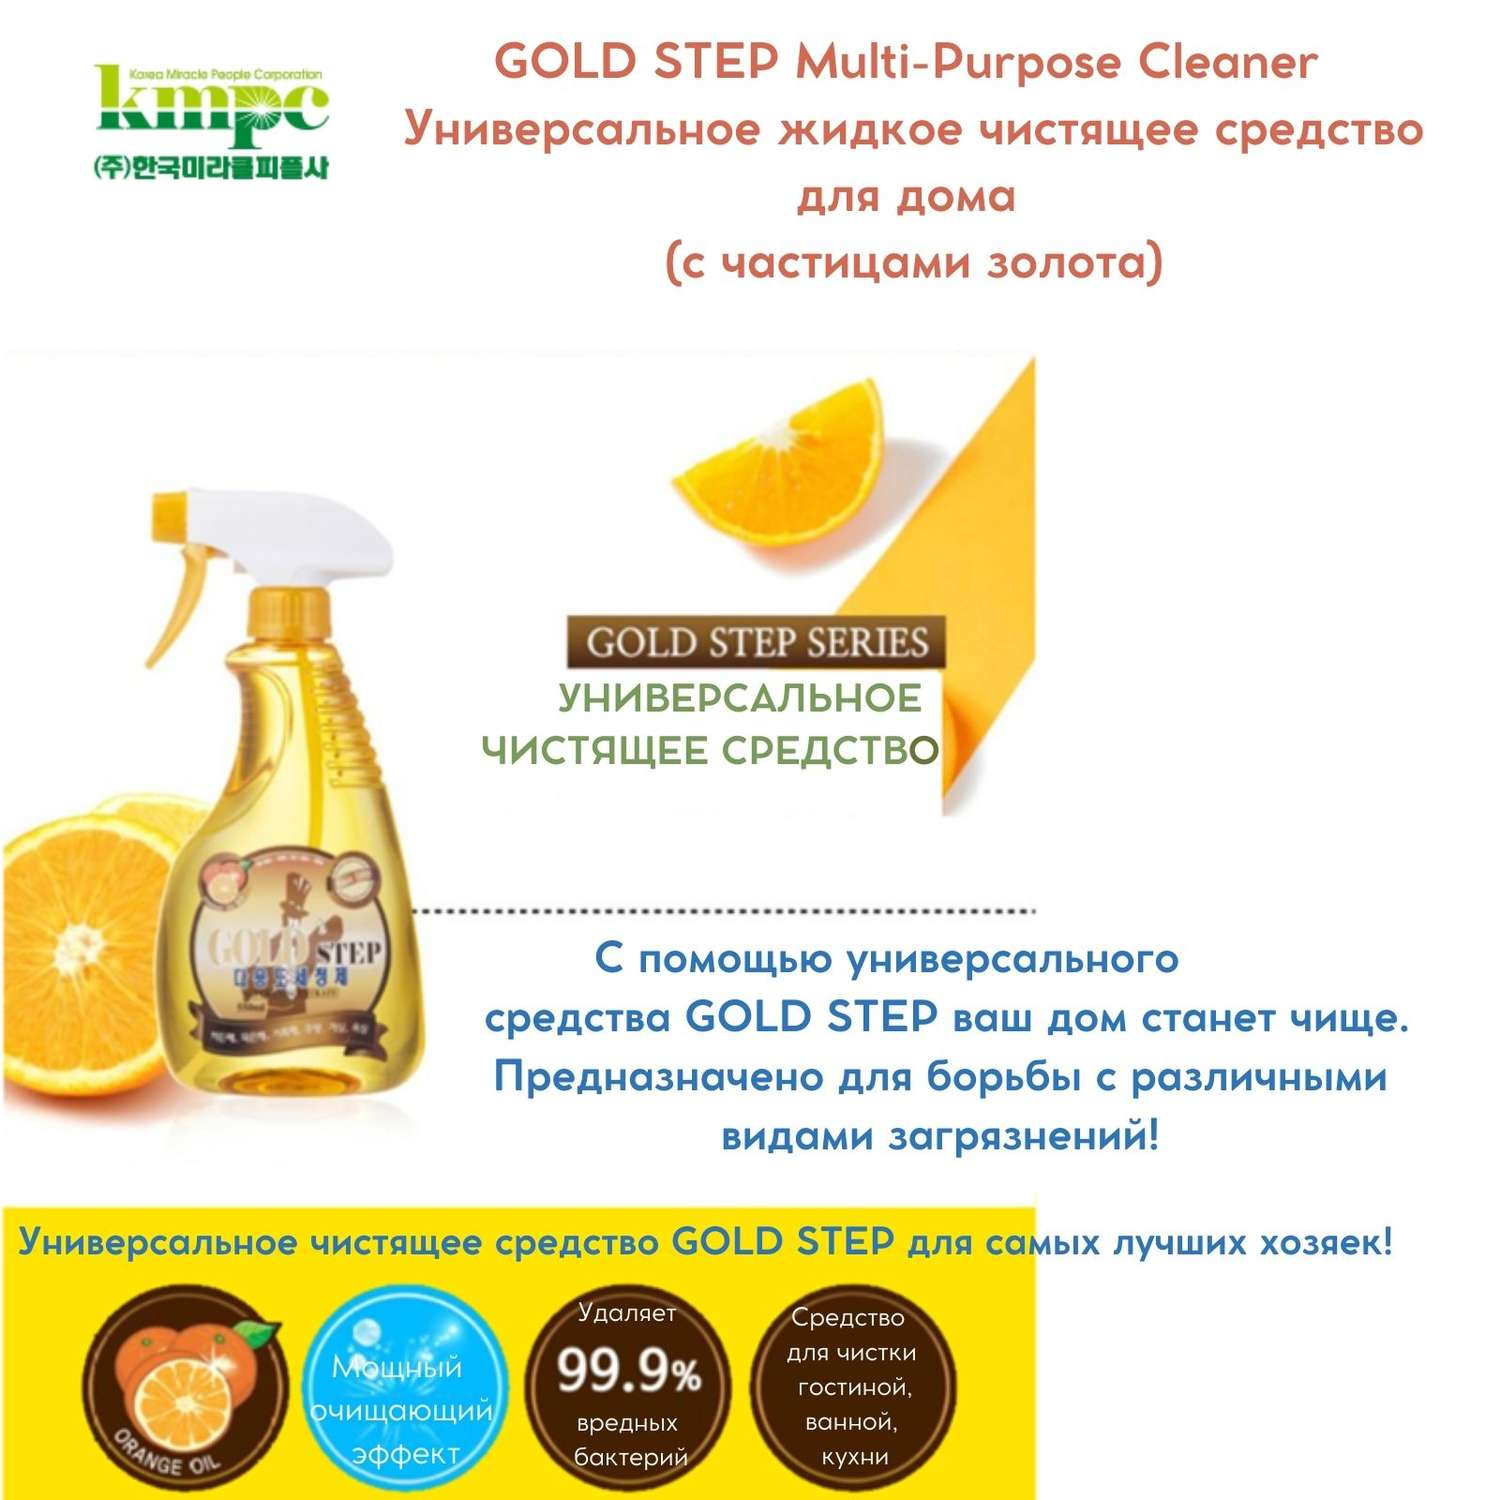 Чистящее средство KMPC жидкое для дома с частицами золота 550 мл 582491 - фото 2